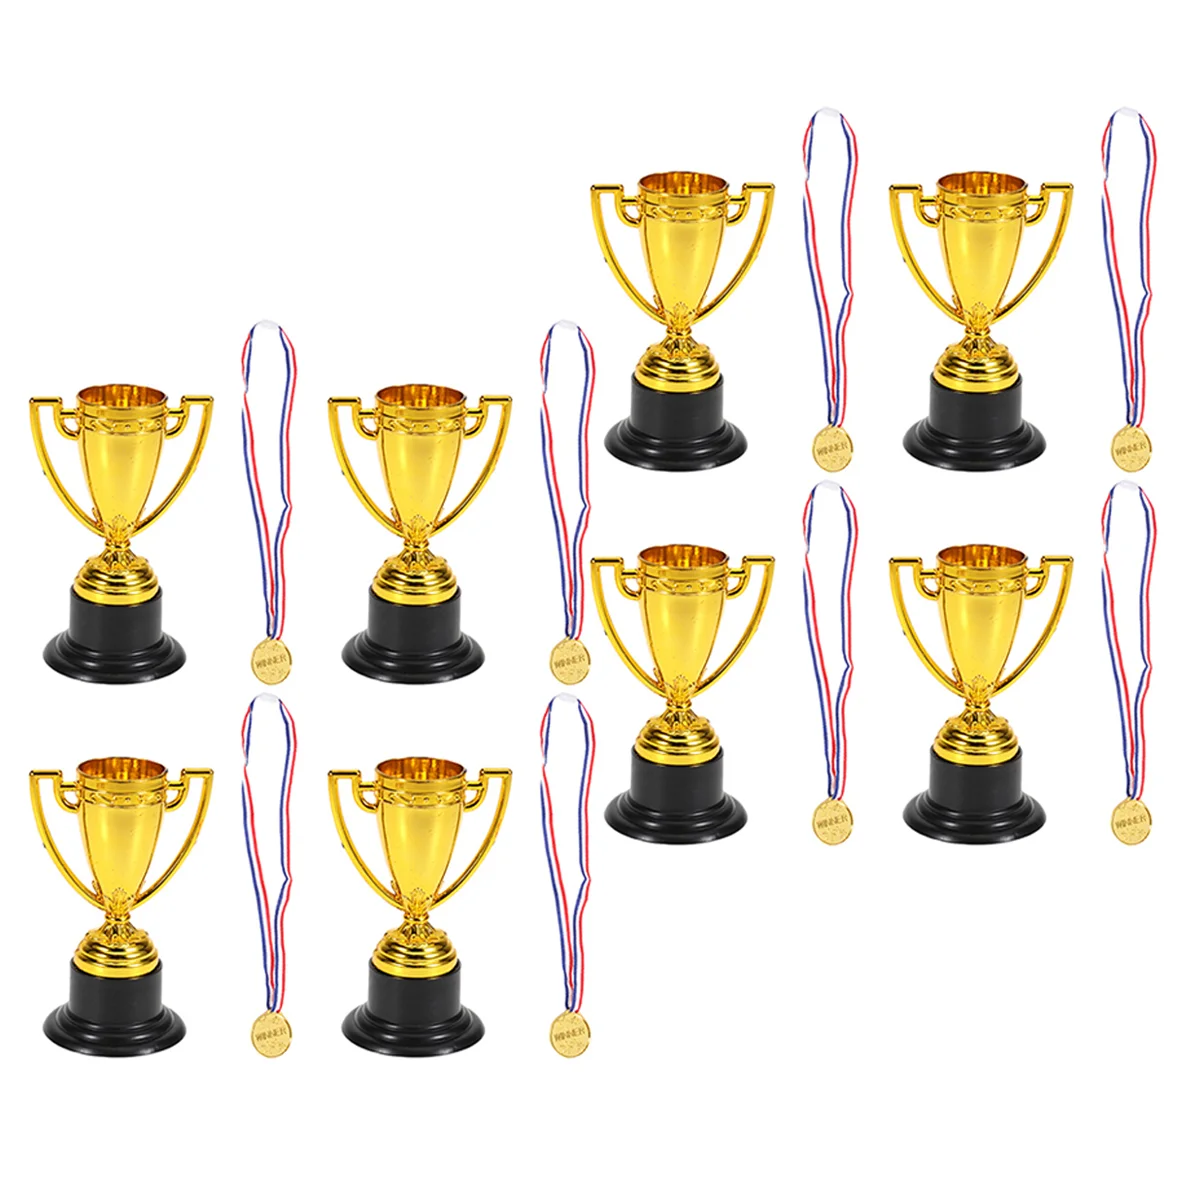 

16 шт. награды на заказ, пластиковые медали, баскетбольный трофей, рождественские подарки, награды, бейсбольный мини-Кубок для детей